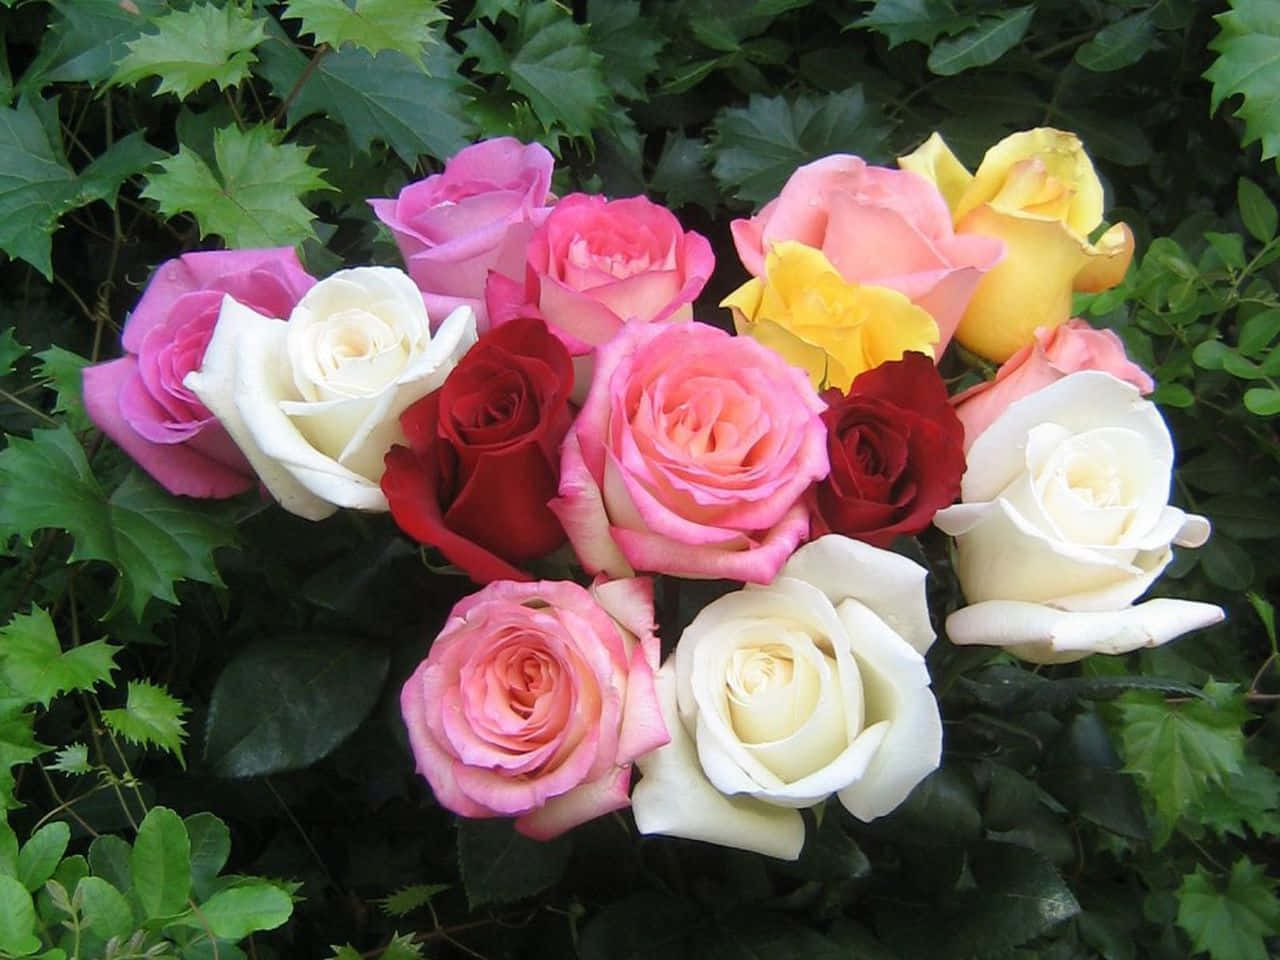 Sfondocon Bellissimi Bouquet Di Fiori E Le Migliori Rose.